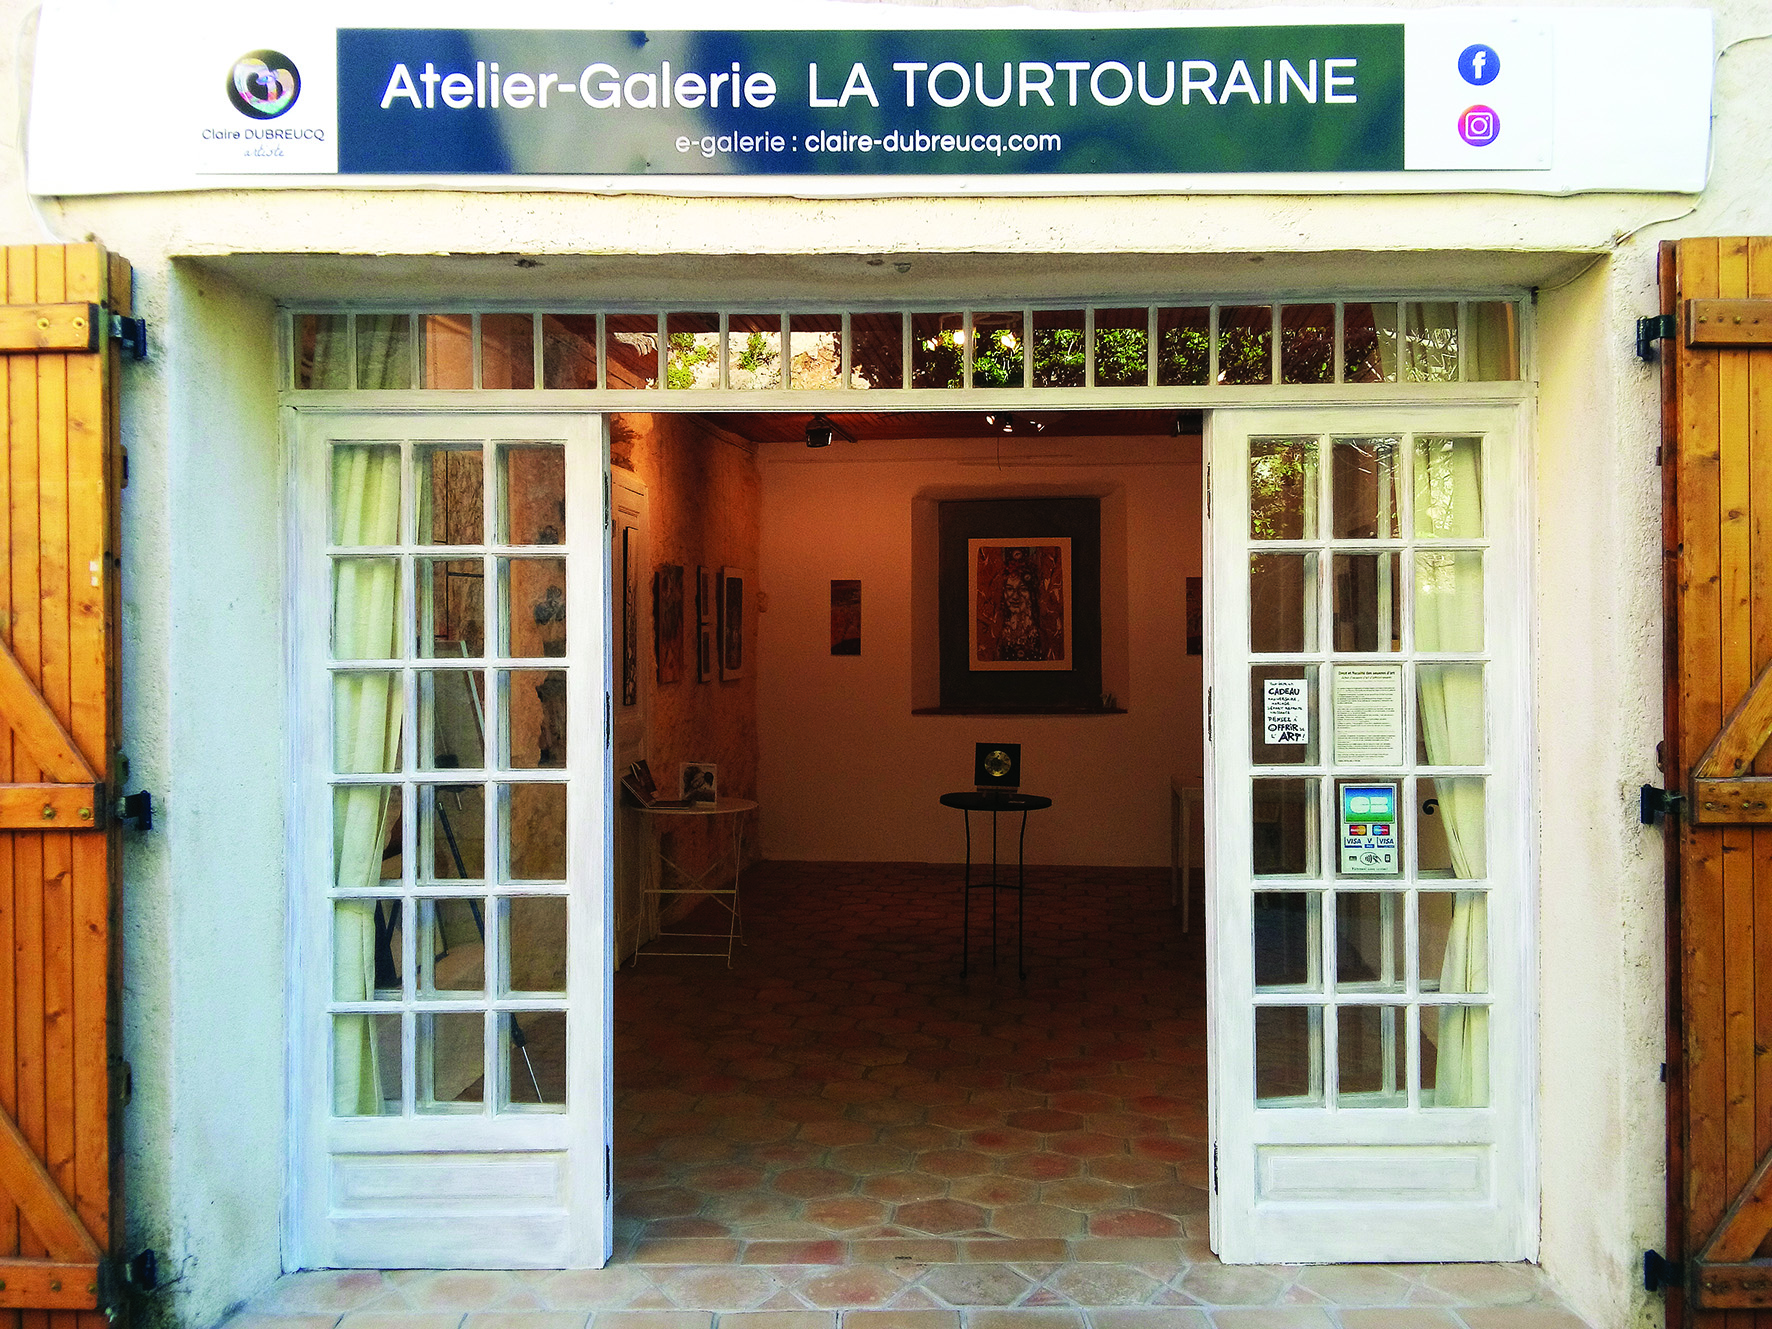 Atelier-Galerie - Atelier-Galerie La Tourtouraine